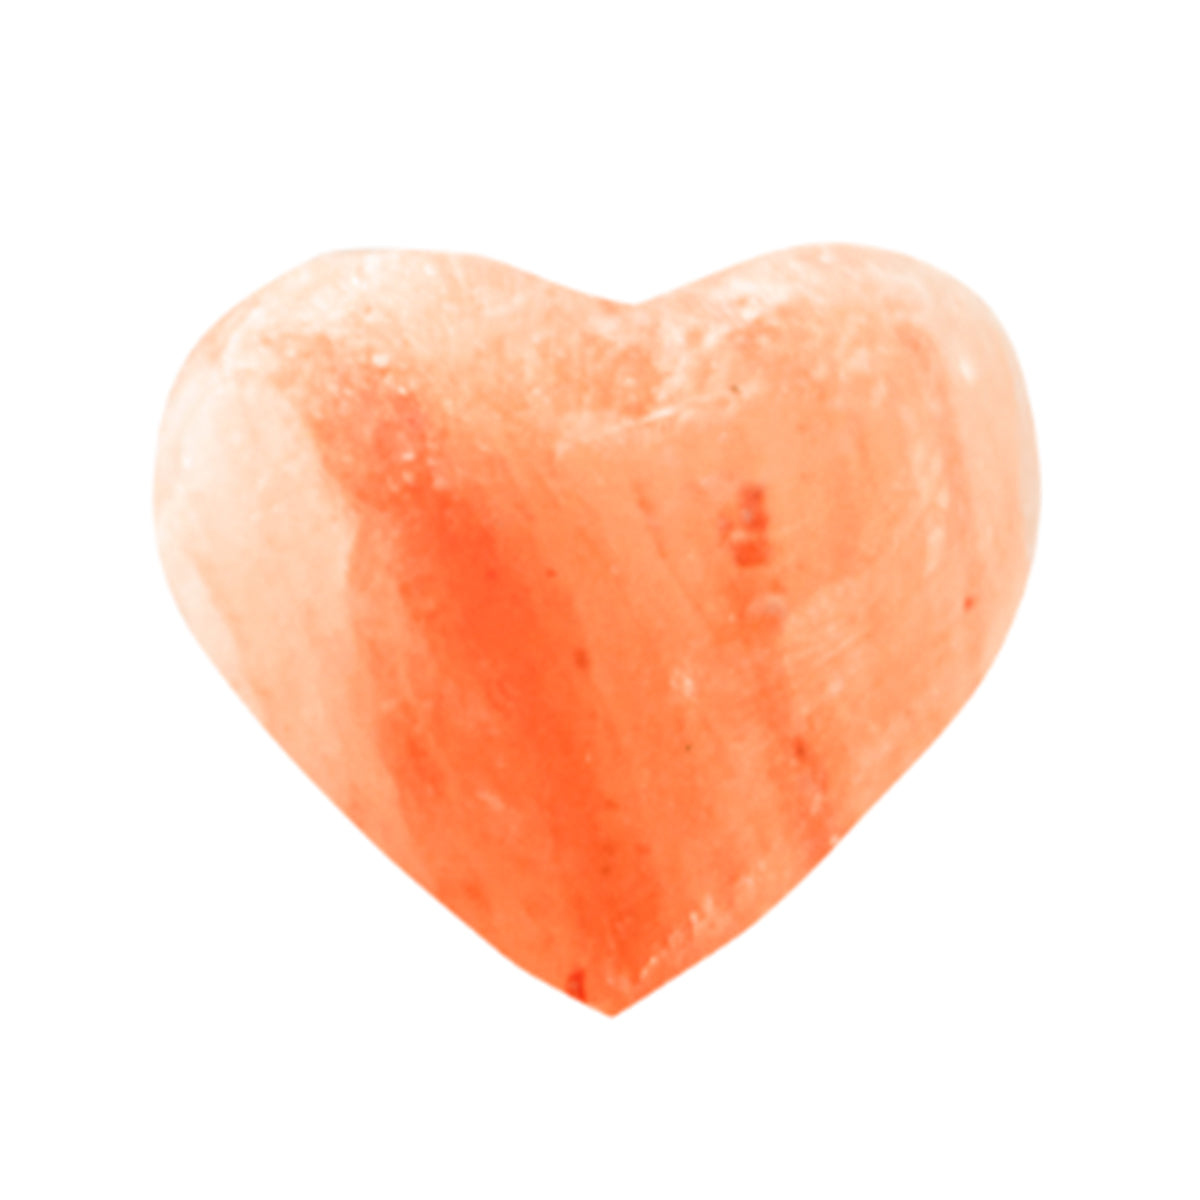 A himalayan salt stone heart shape